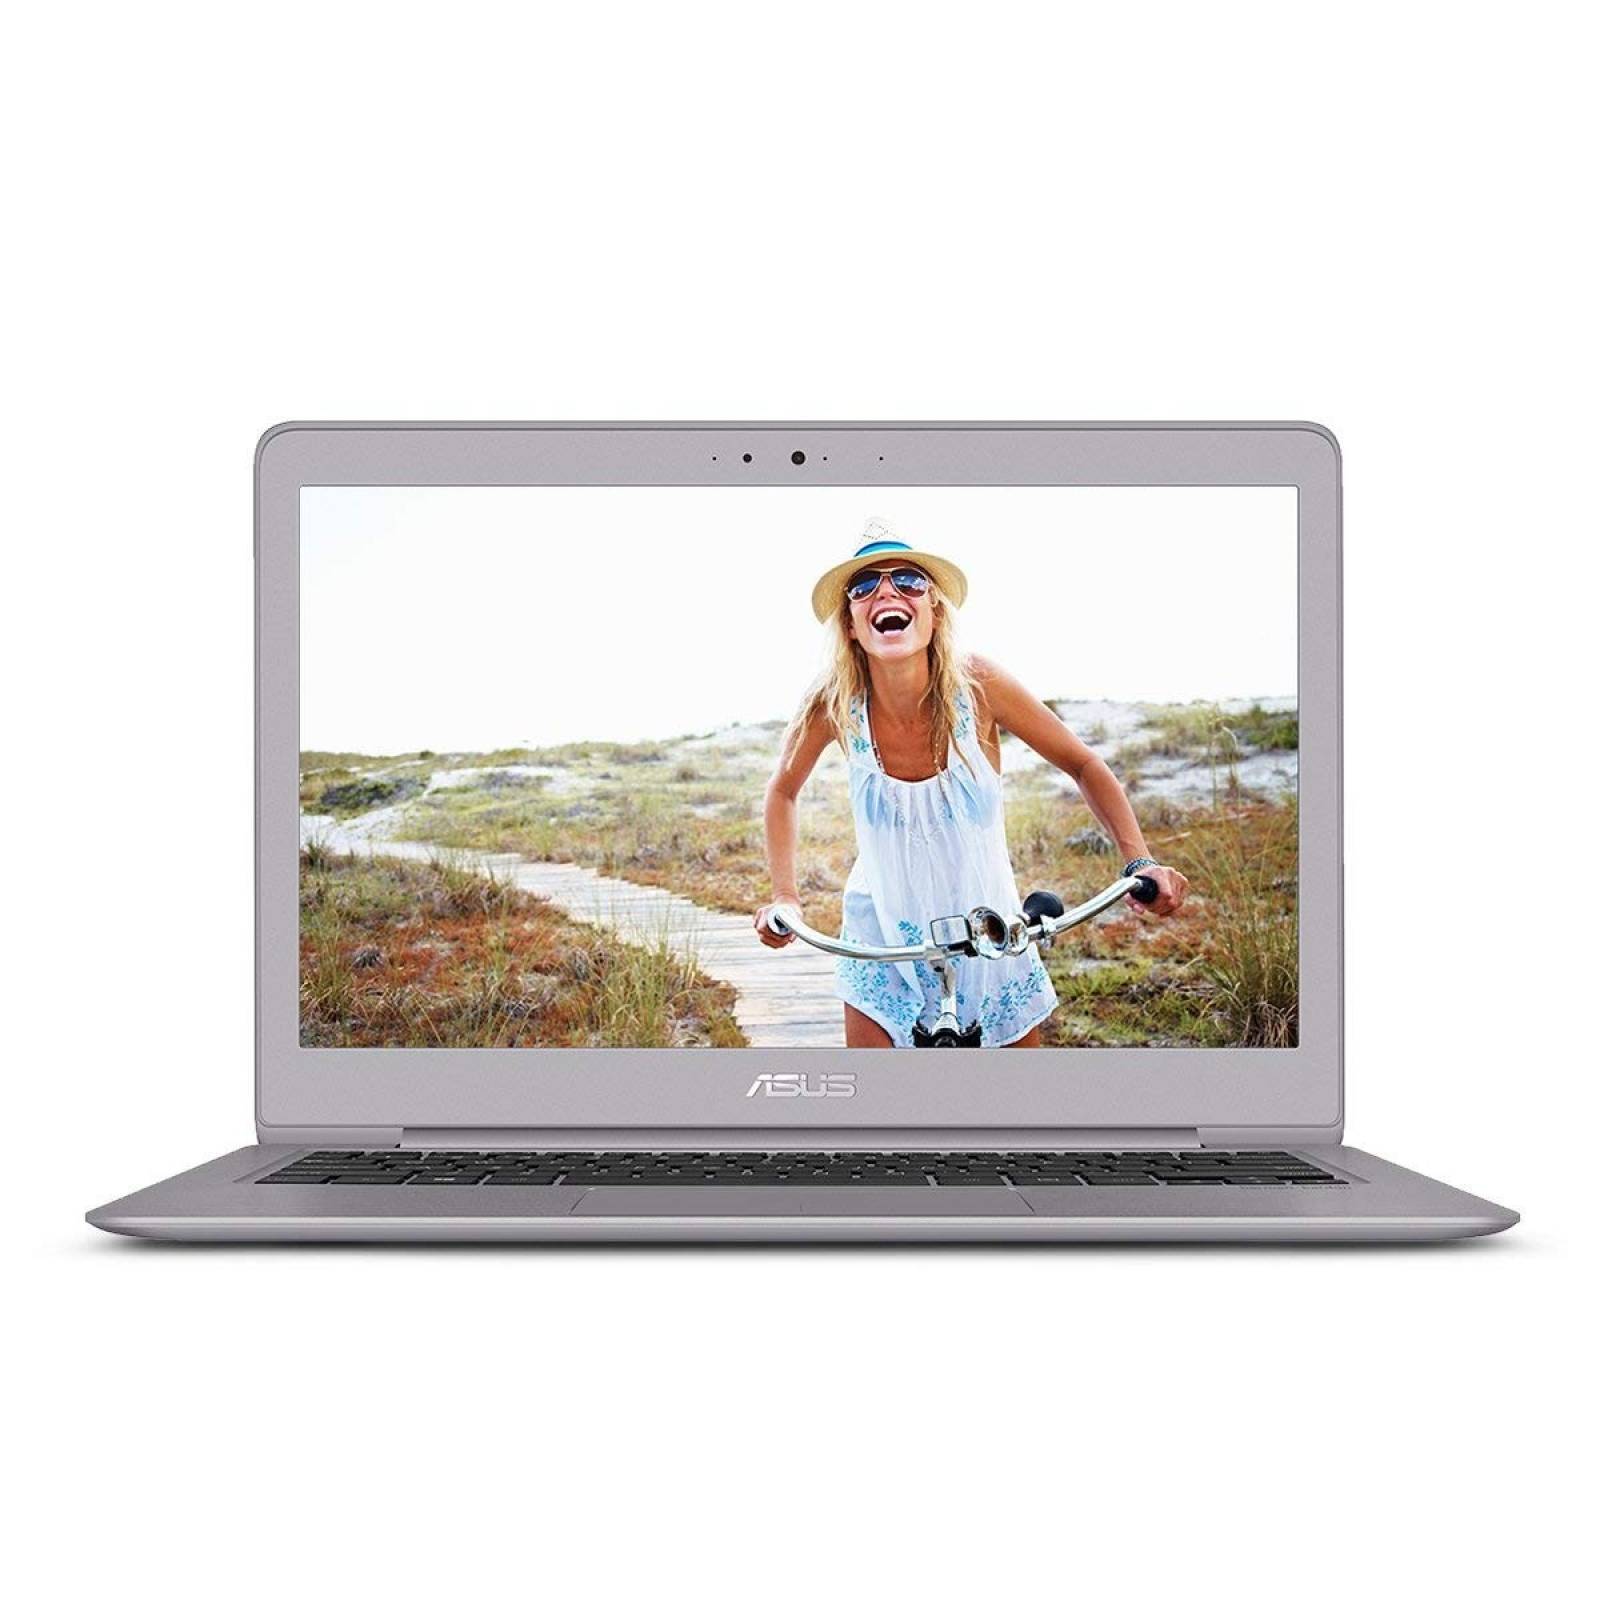 Laptop Asus ZenBook UX330UA-AH54 i5 8GB 256GB SSD Win10